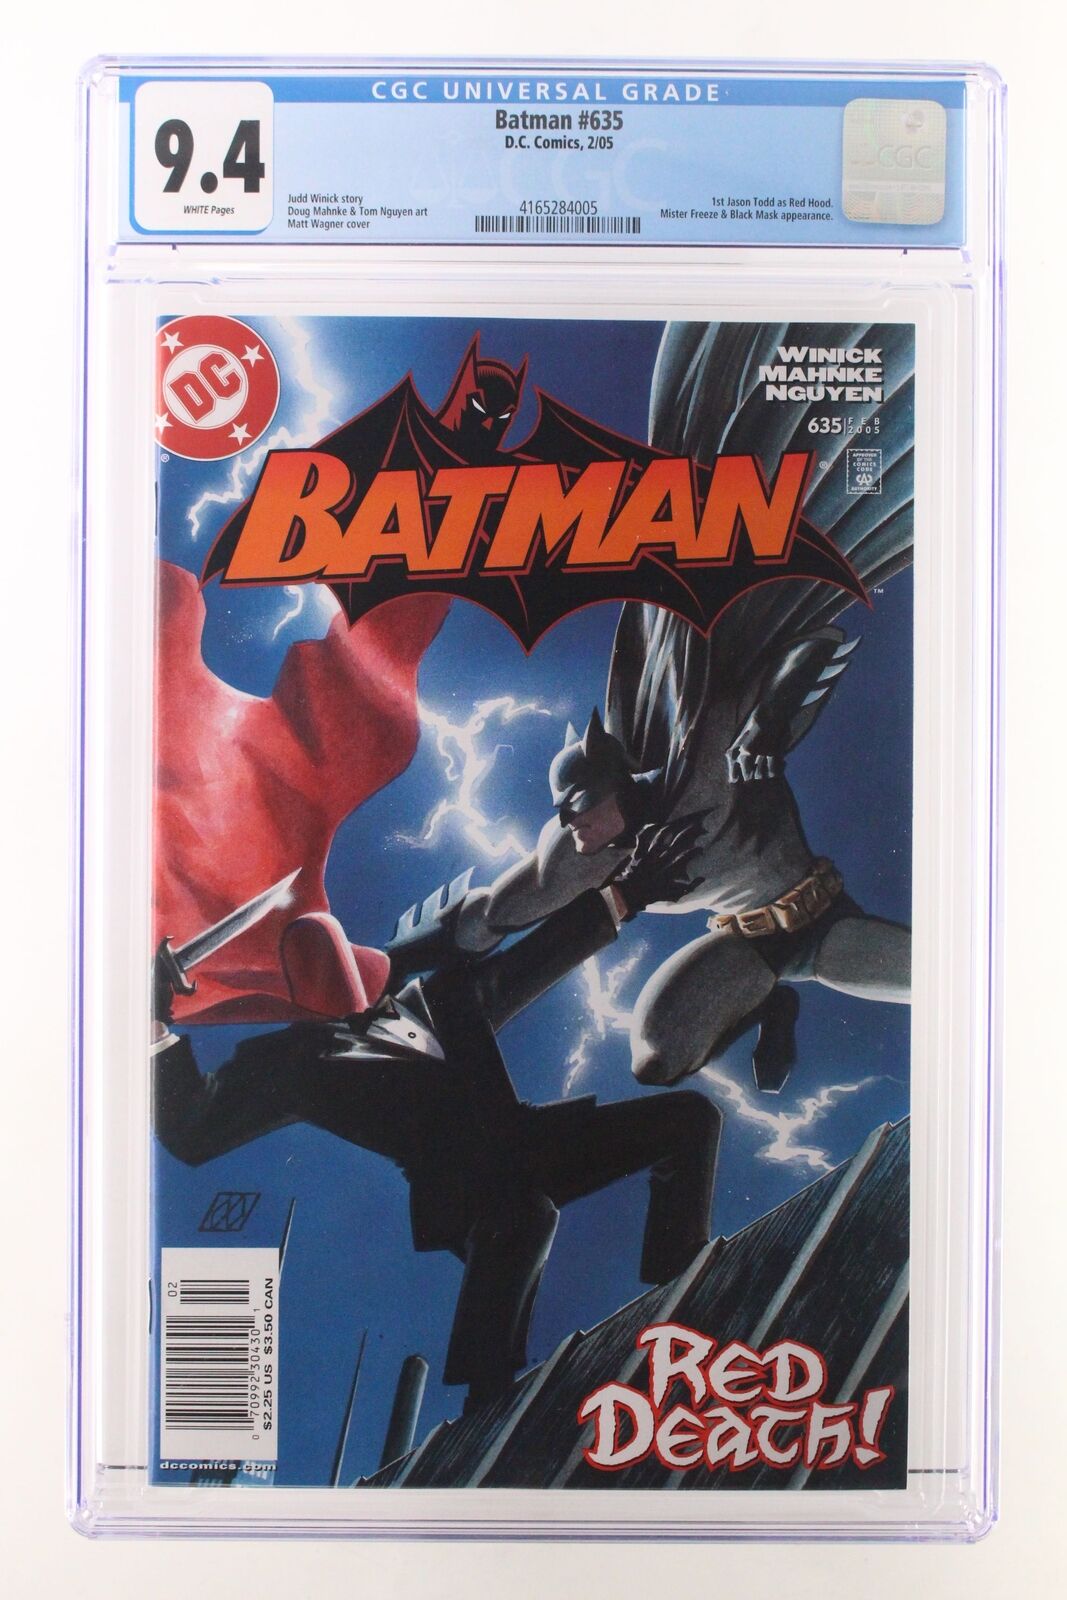 Batman #635 - D.C. Comics 2005 CGC 9.4 1st Jason Todd as Red Hood. NEWSSTAND